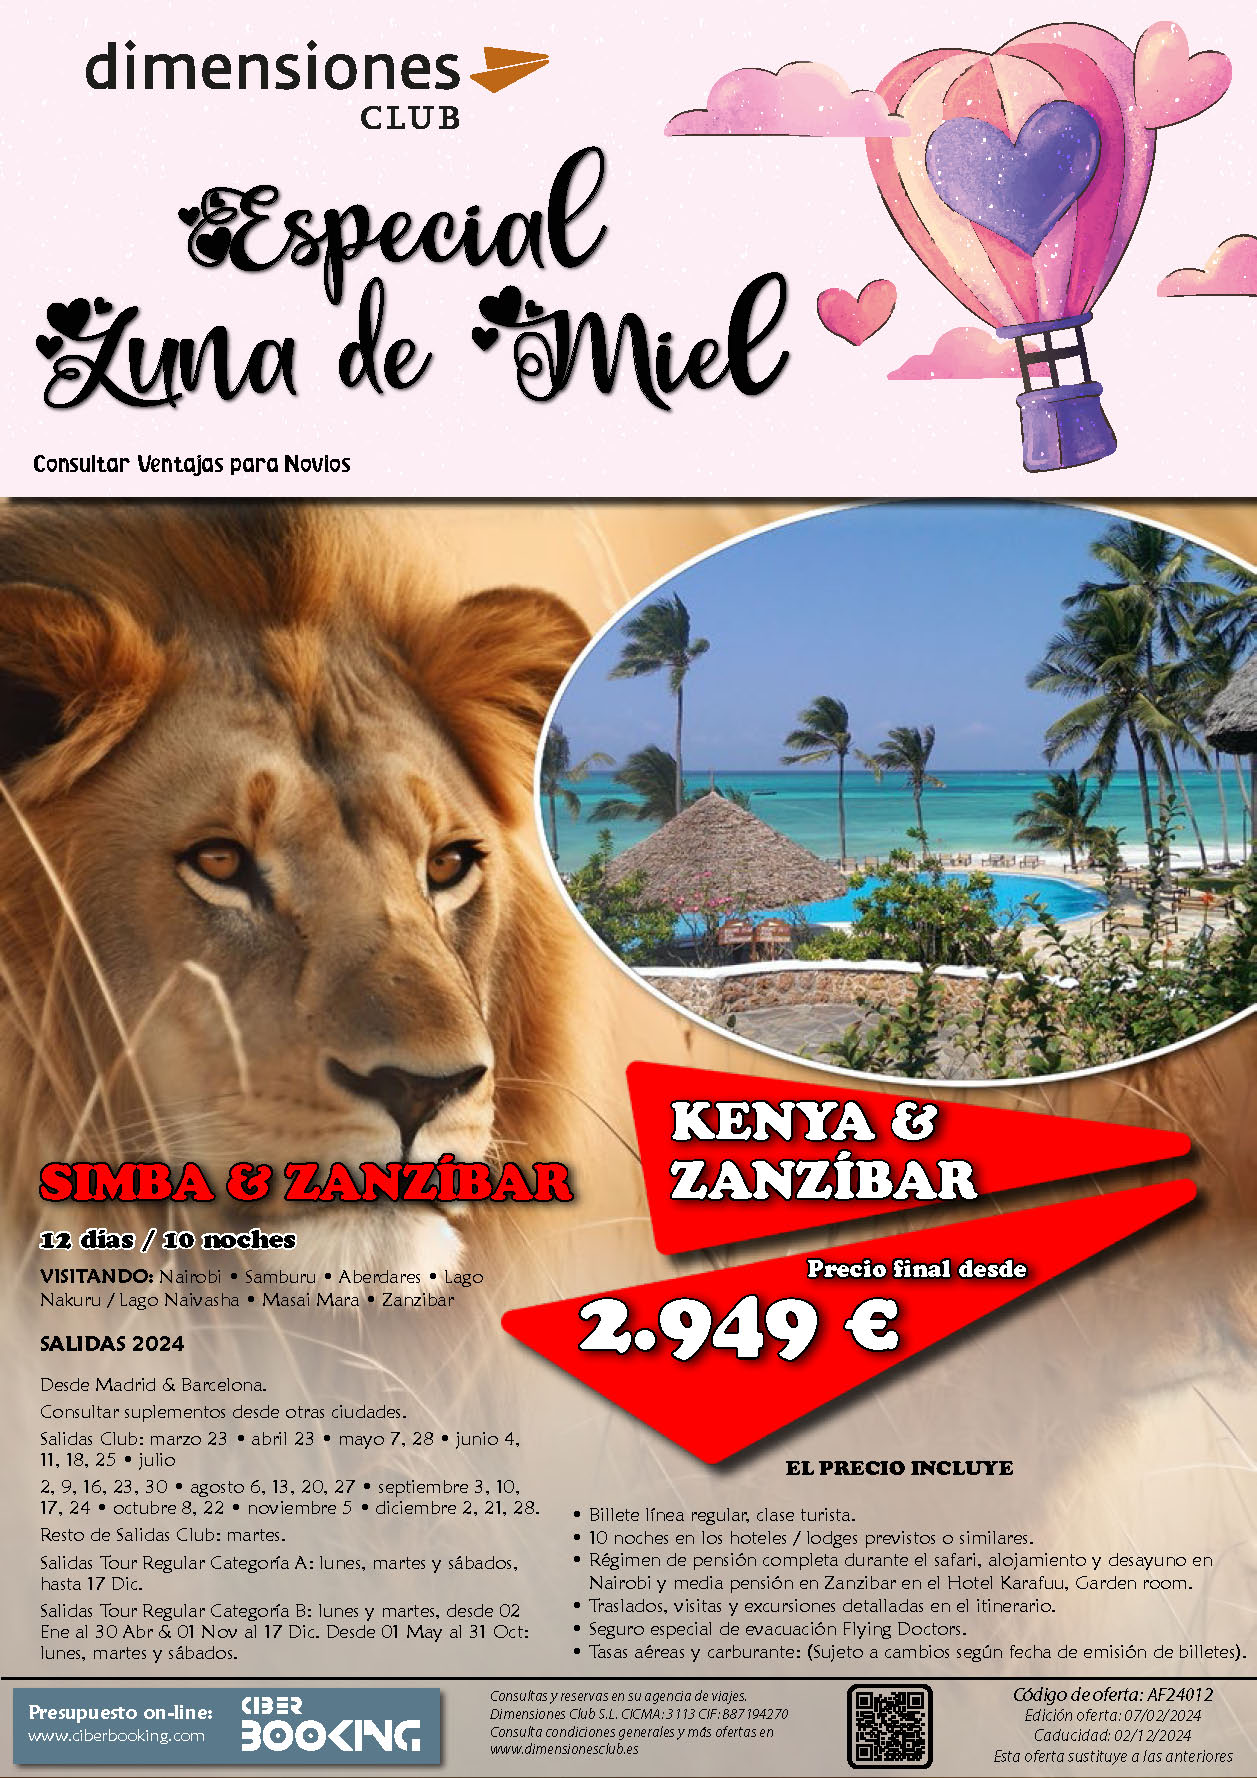 Oferta Dimensiones Club Luna de Miel en Kenia Safari Simba y Zanzibar 12 dias dias salidas Marzo a Diciembre 2024 desde Madrid y Barcelona